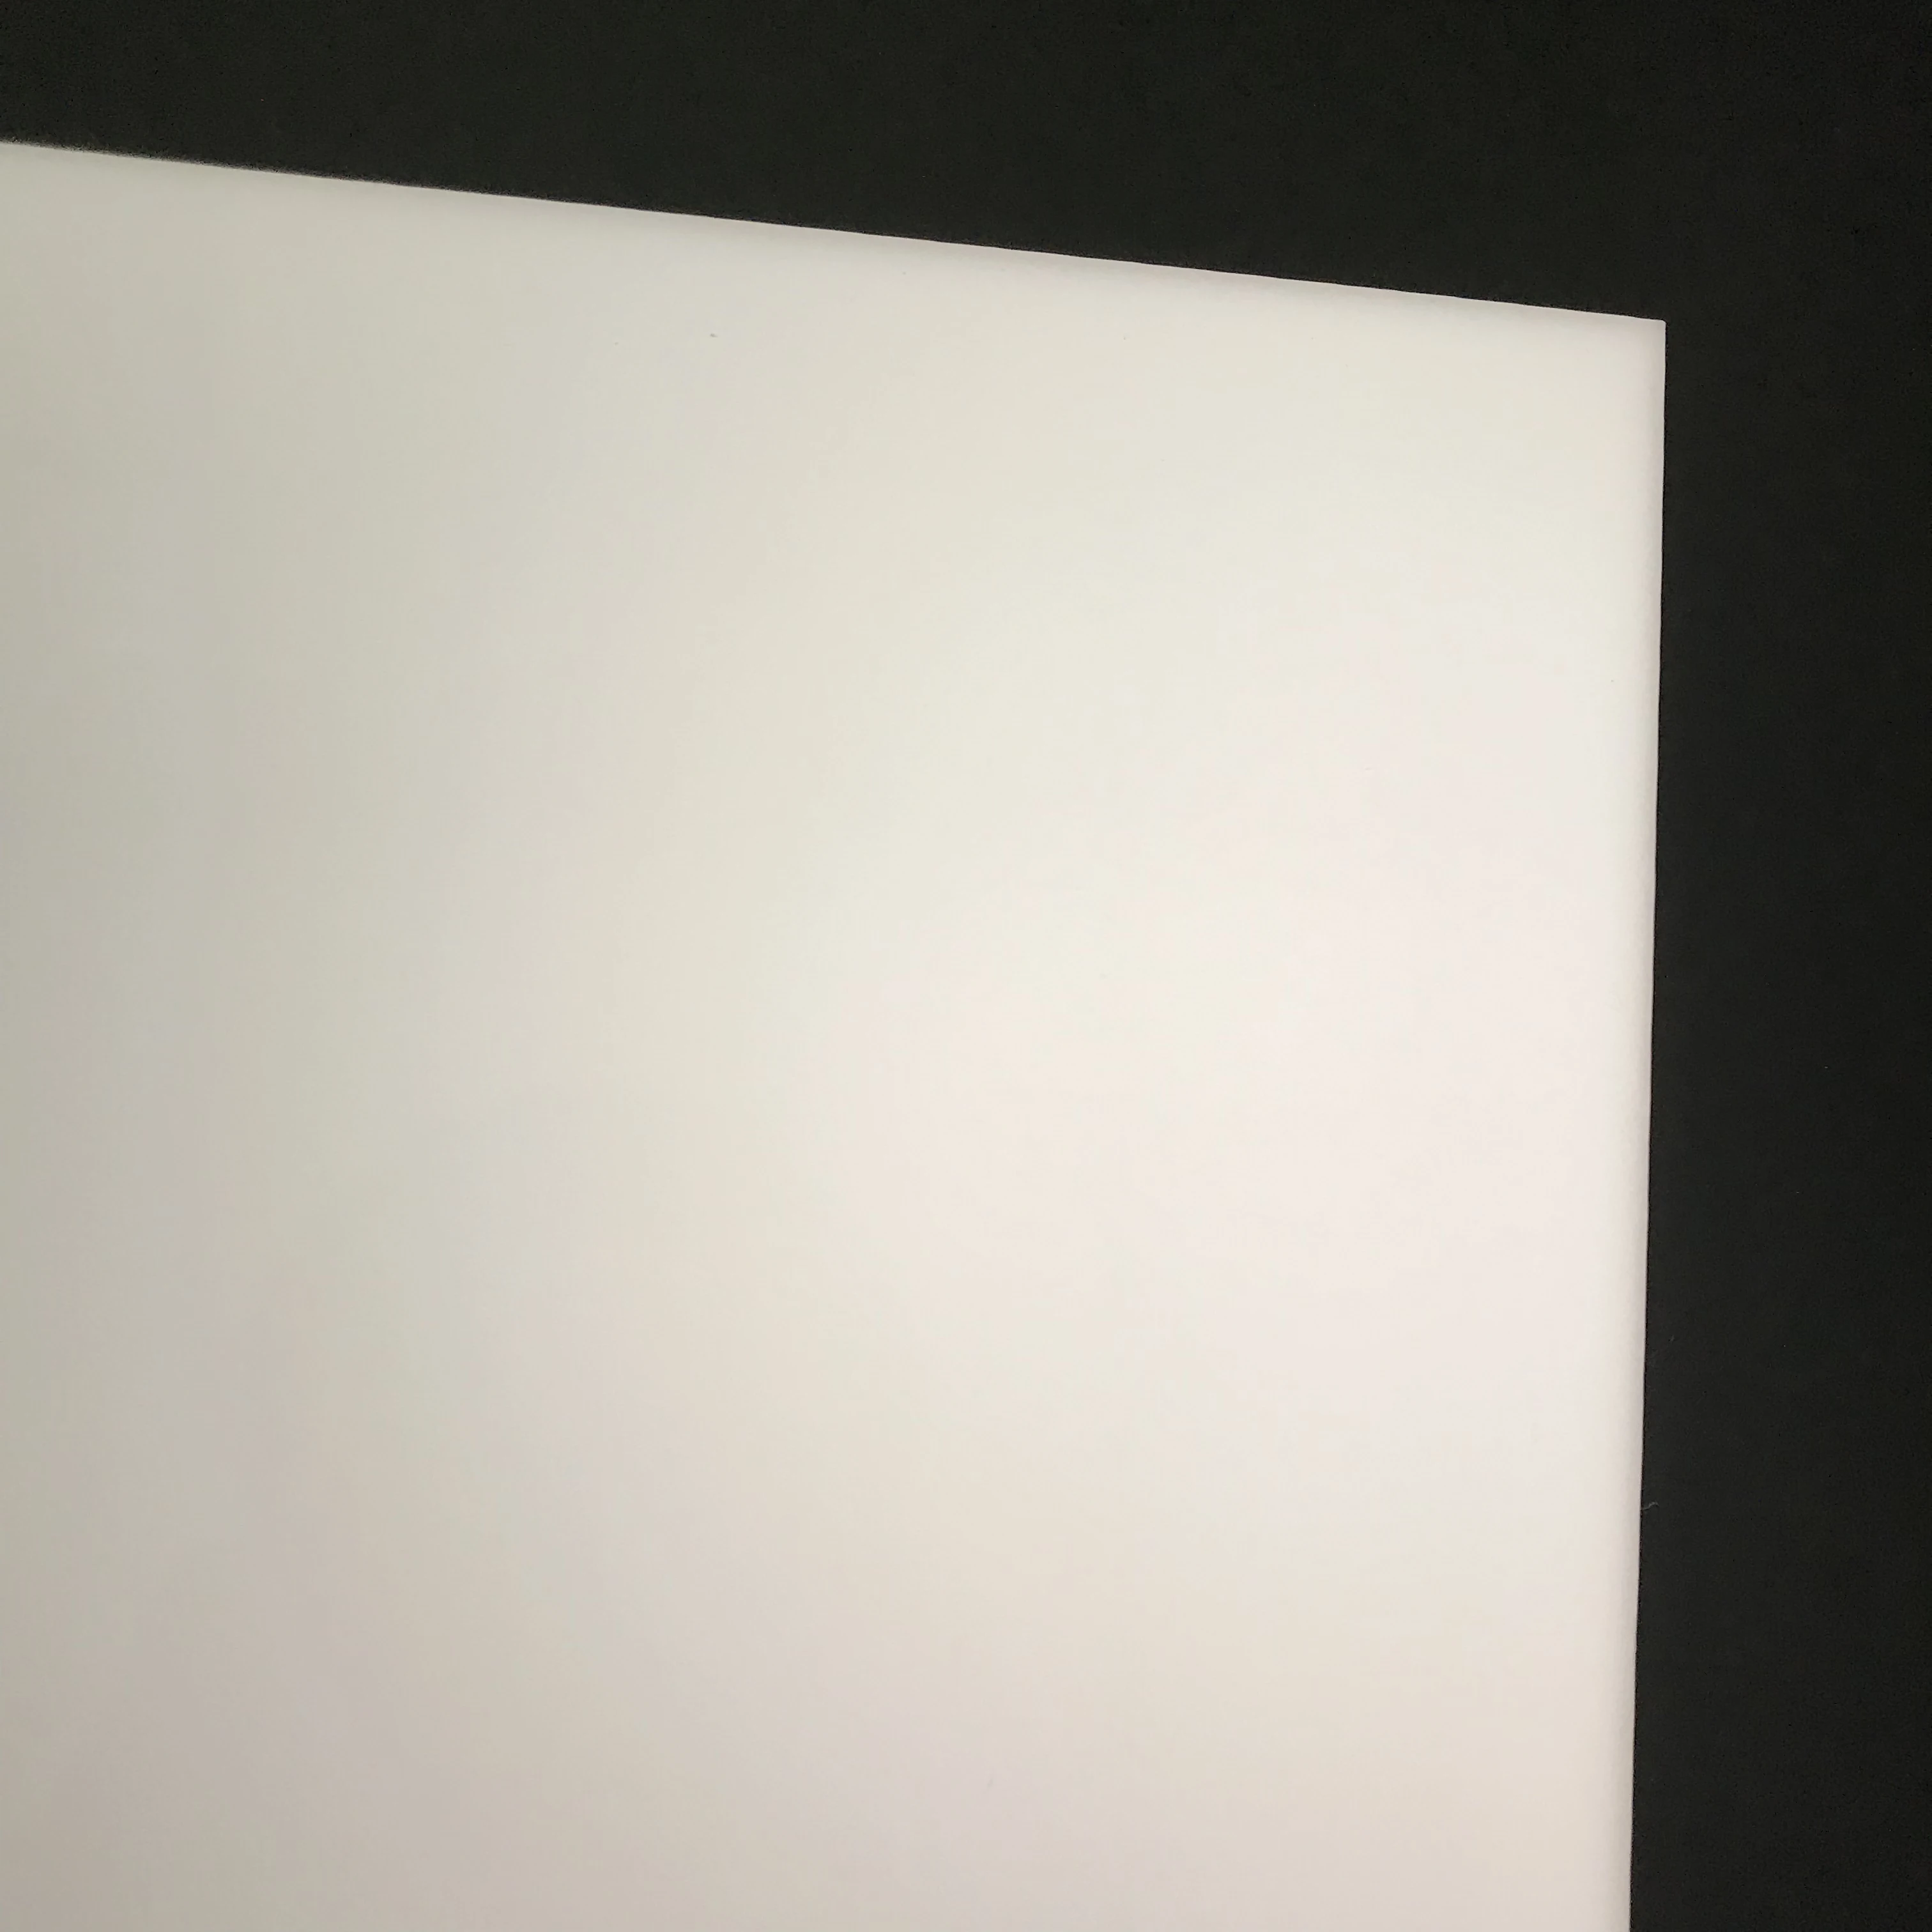 3 мм имитация опалов из белого акрила панель Плекси лист для рекламы